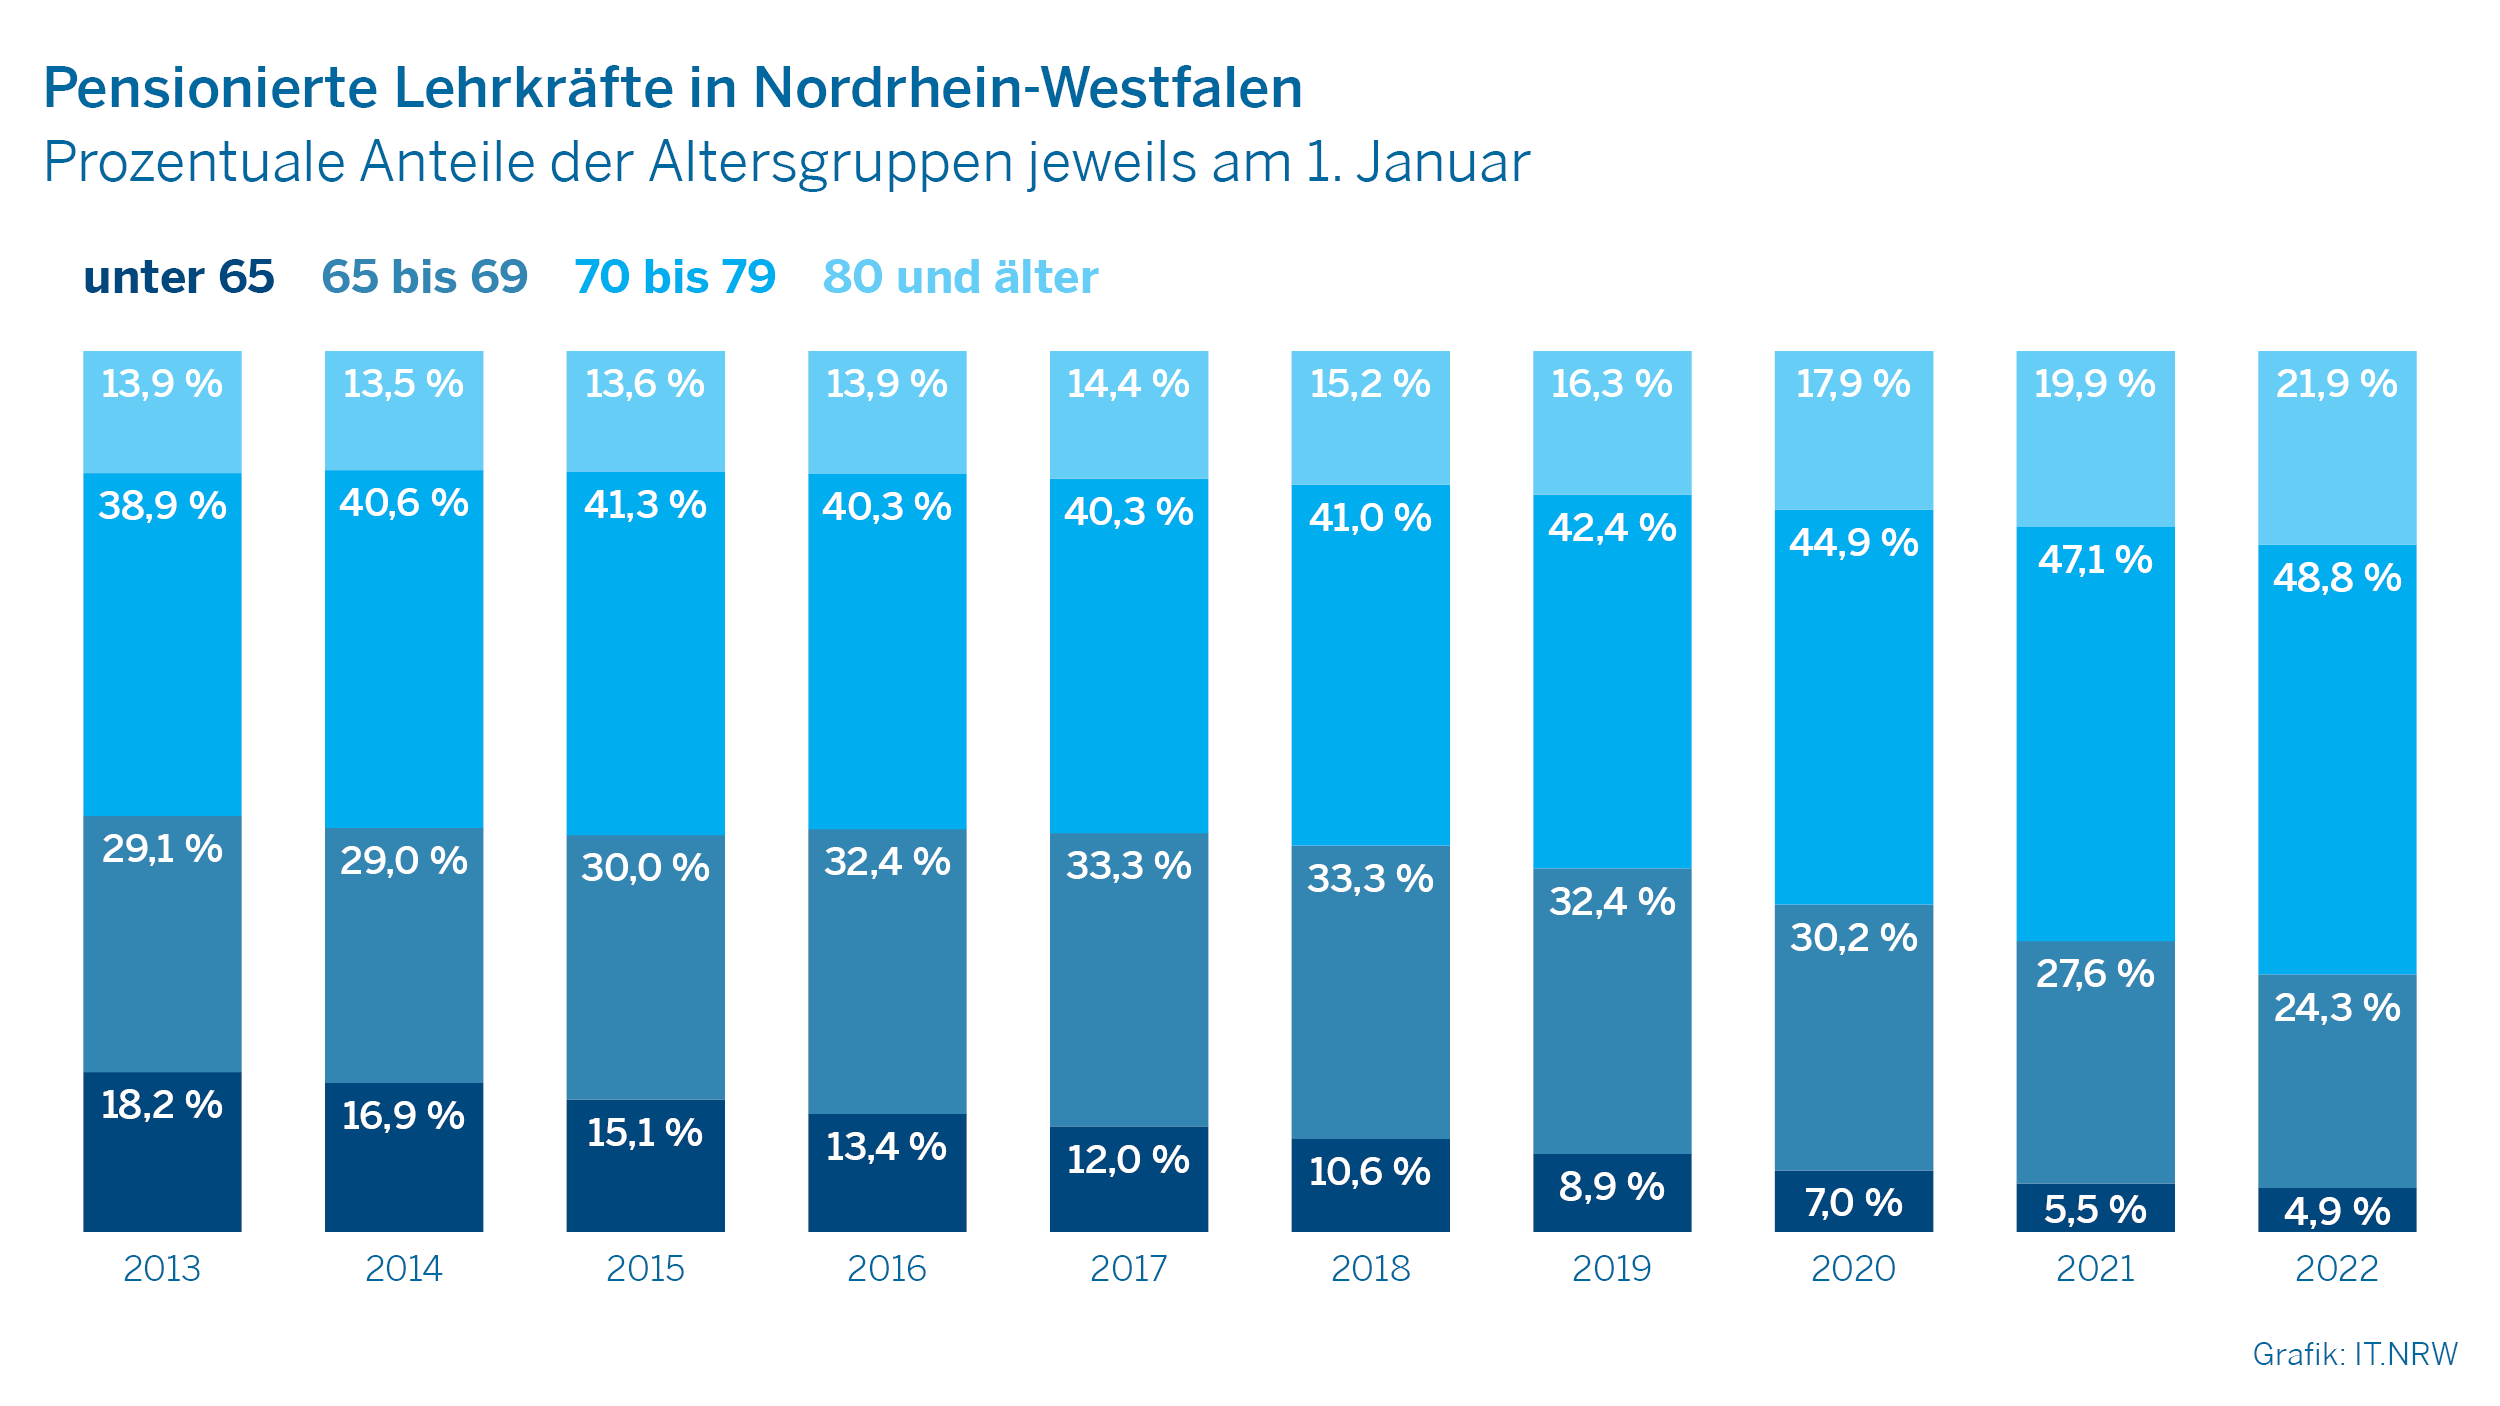 Pensionierte Lehrkräfte in Nordrhein-Westfalen